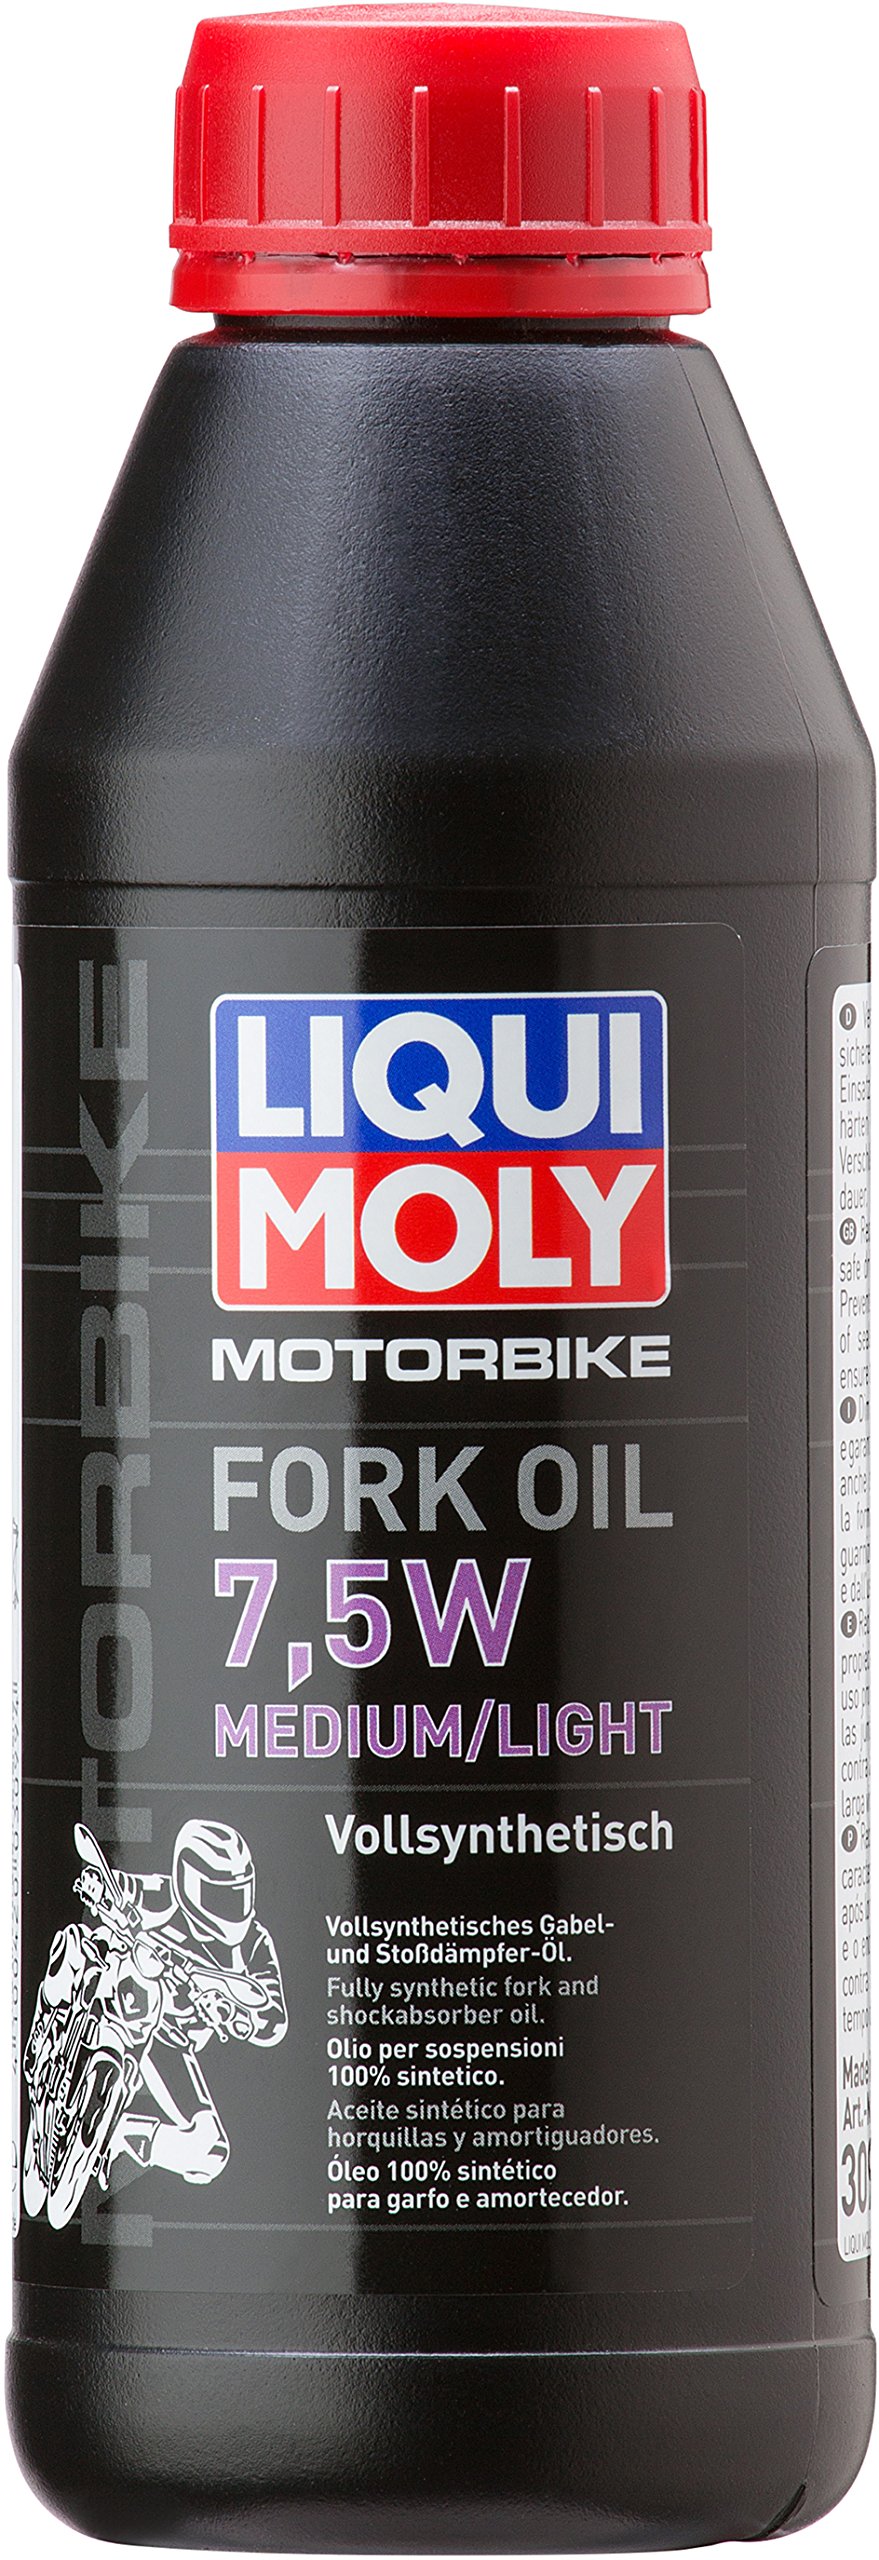 LIQUI MOLY Motorbike Fork Oil 7,5W medium/light | 500 ml | Motorrad Gabelöl | Art.-Nr.: 3099 von Liqui Moly